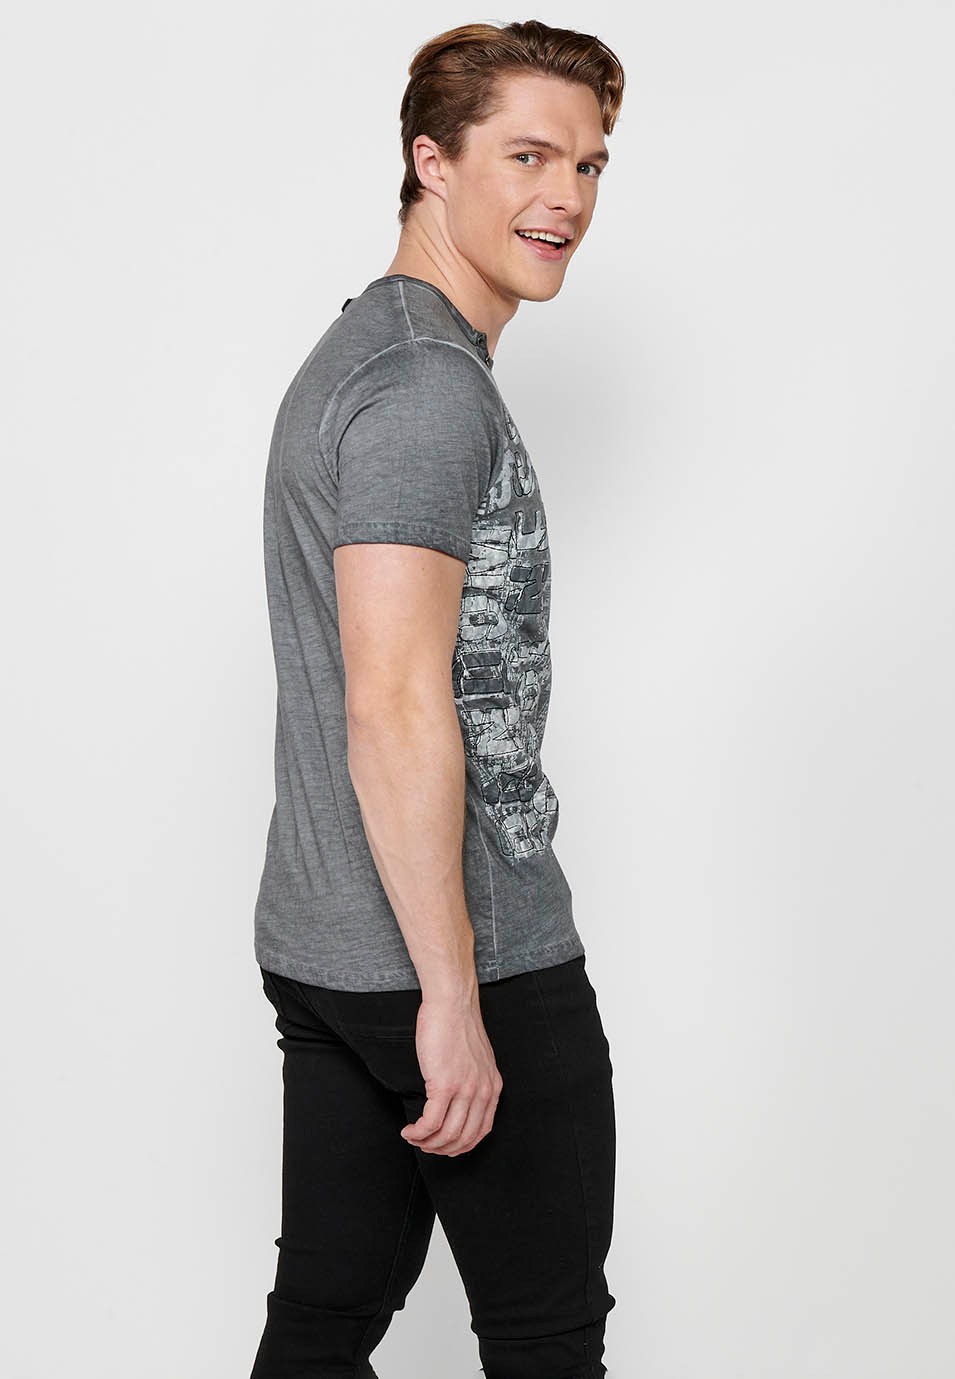 Kurzarm-T-Shirt aus Baumwolle, V-Ausschnitt mit Knopfverzierung, graue Farbe für Herren